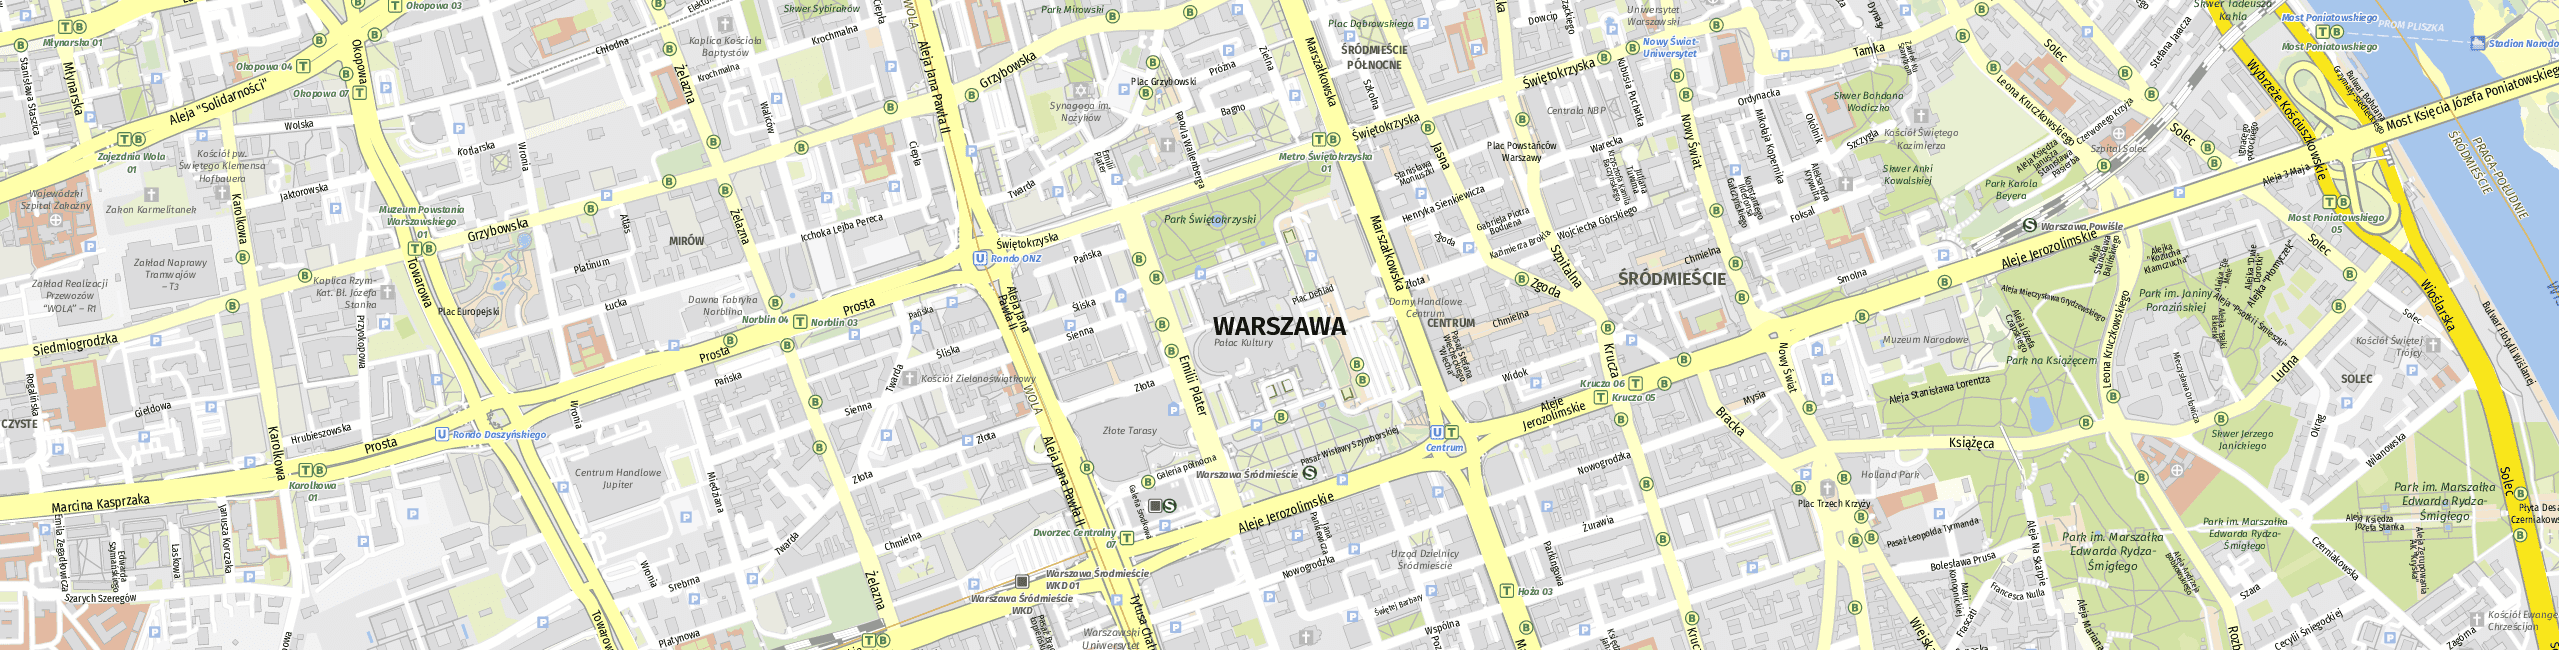 Stadtplan Warschau zum Downloaden.